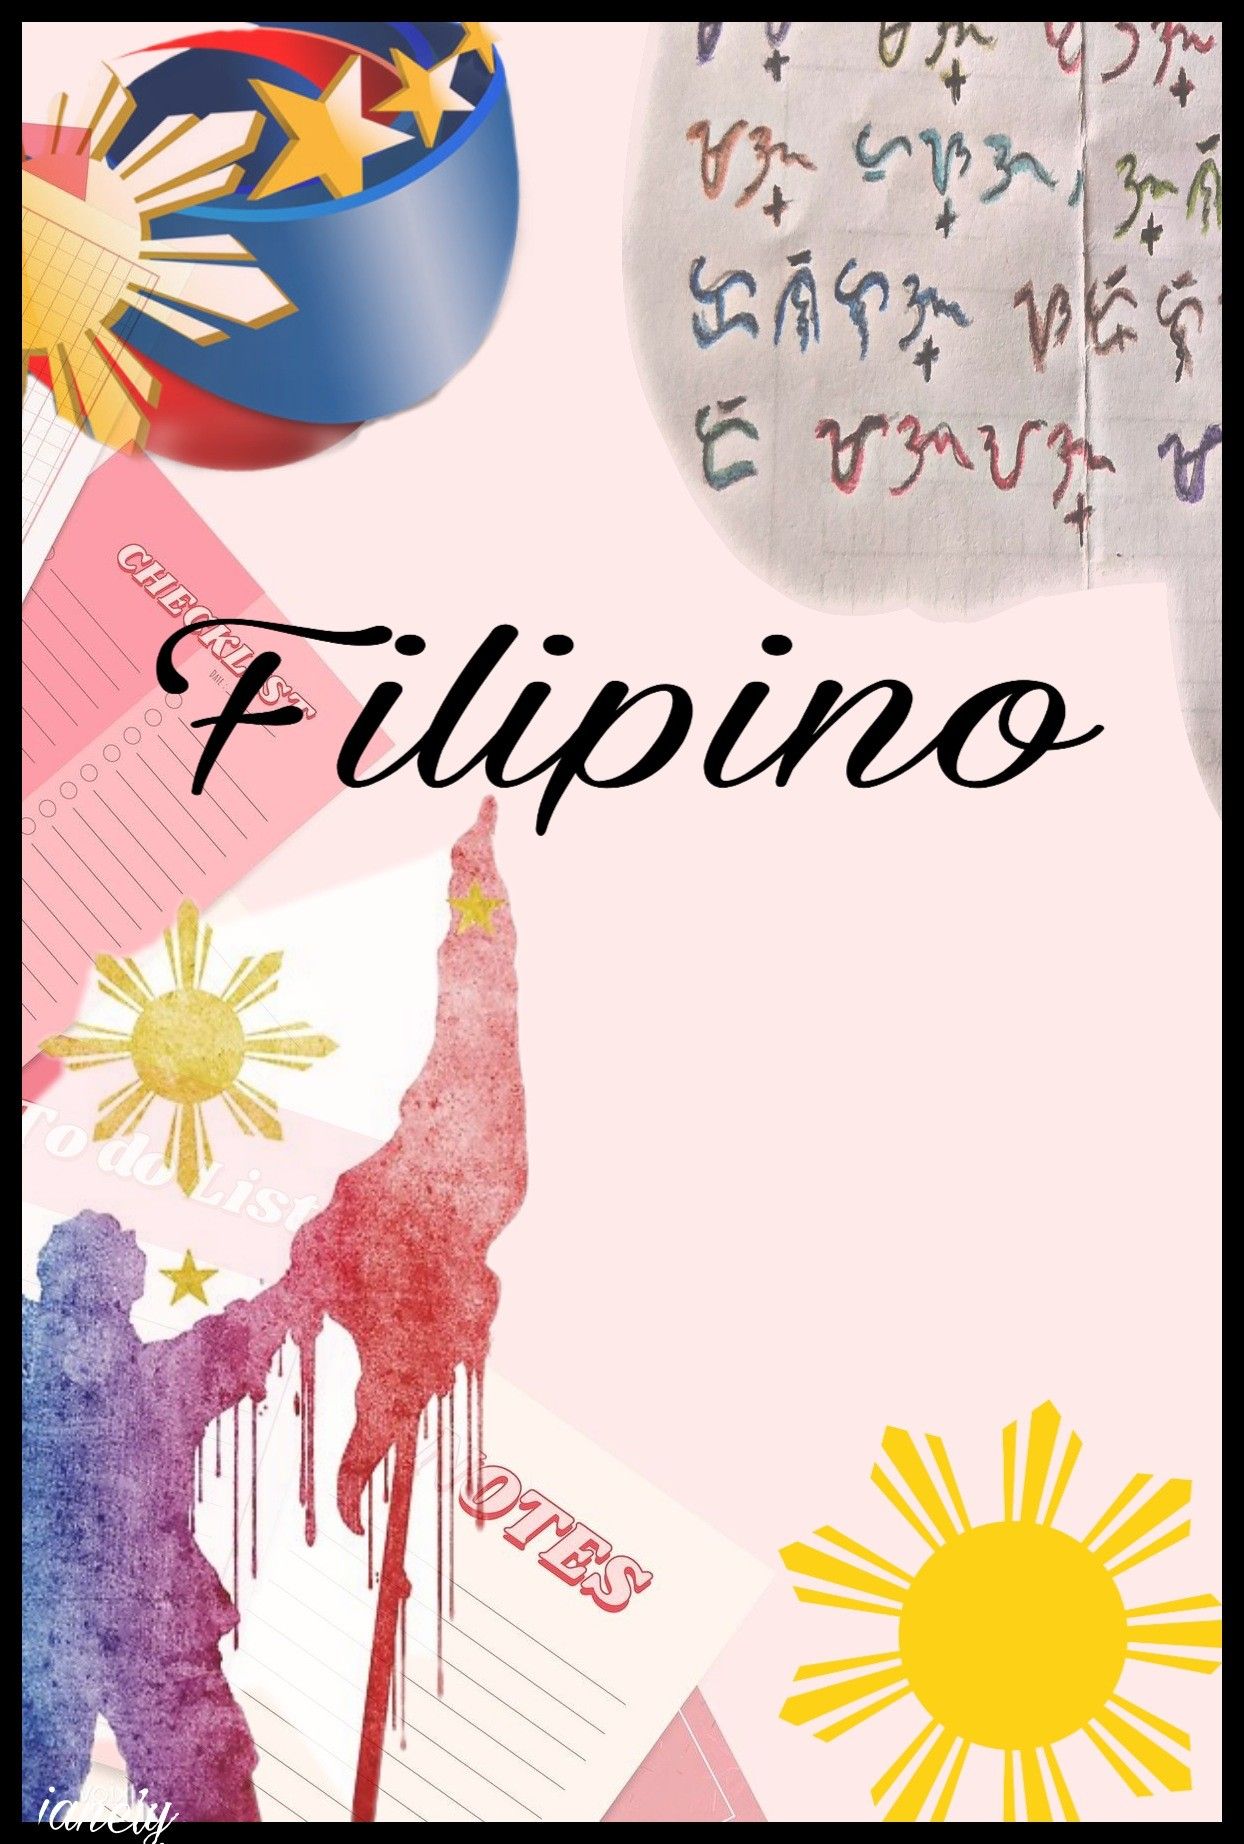 LPESC FILIPINO